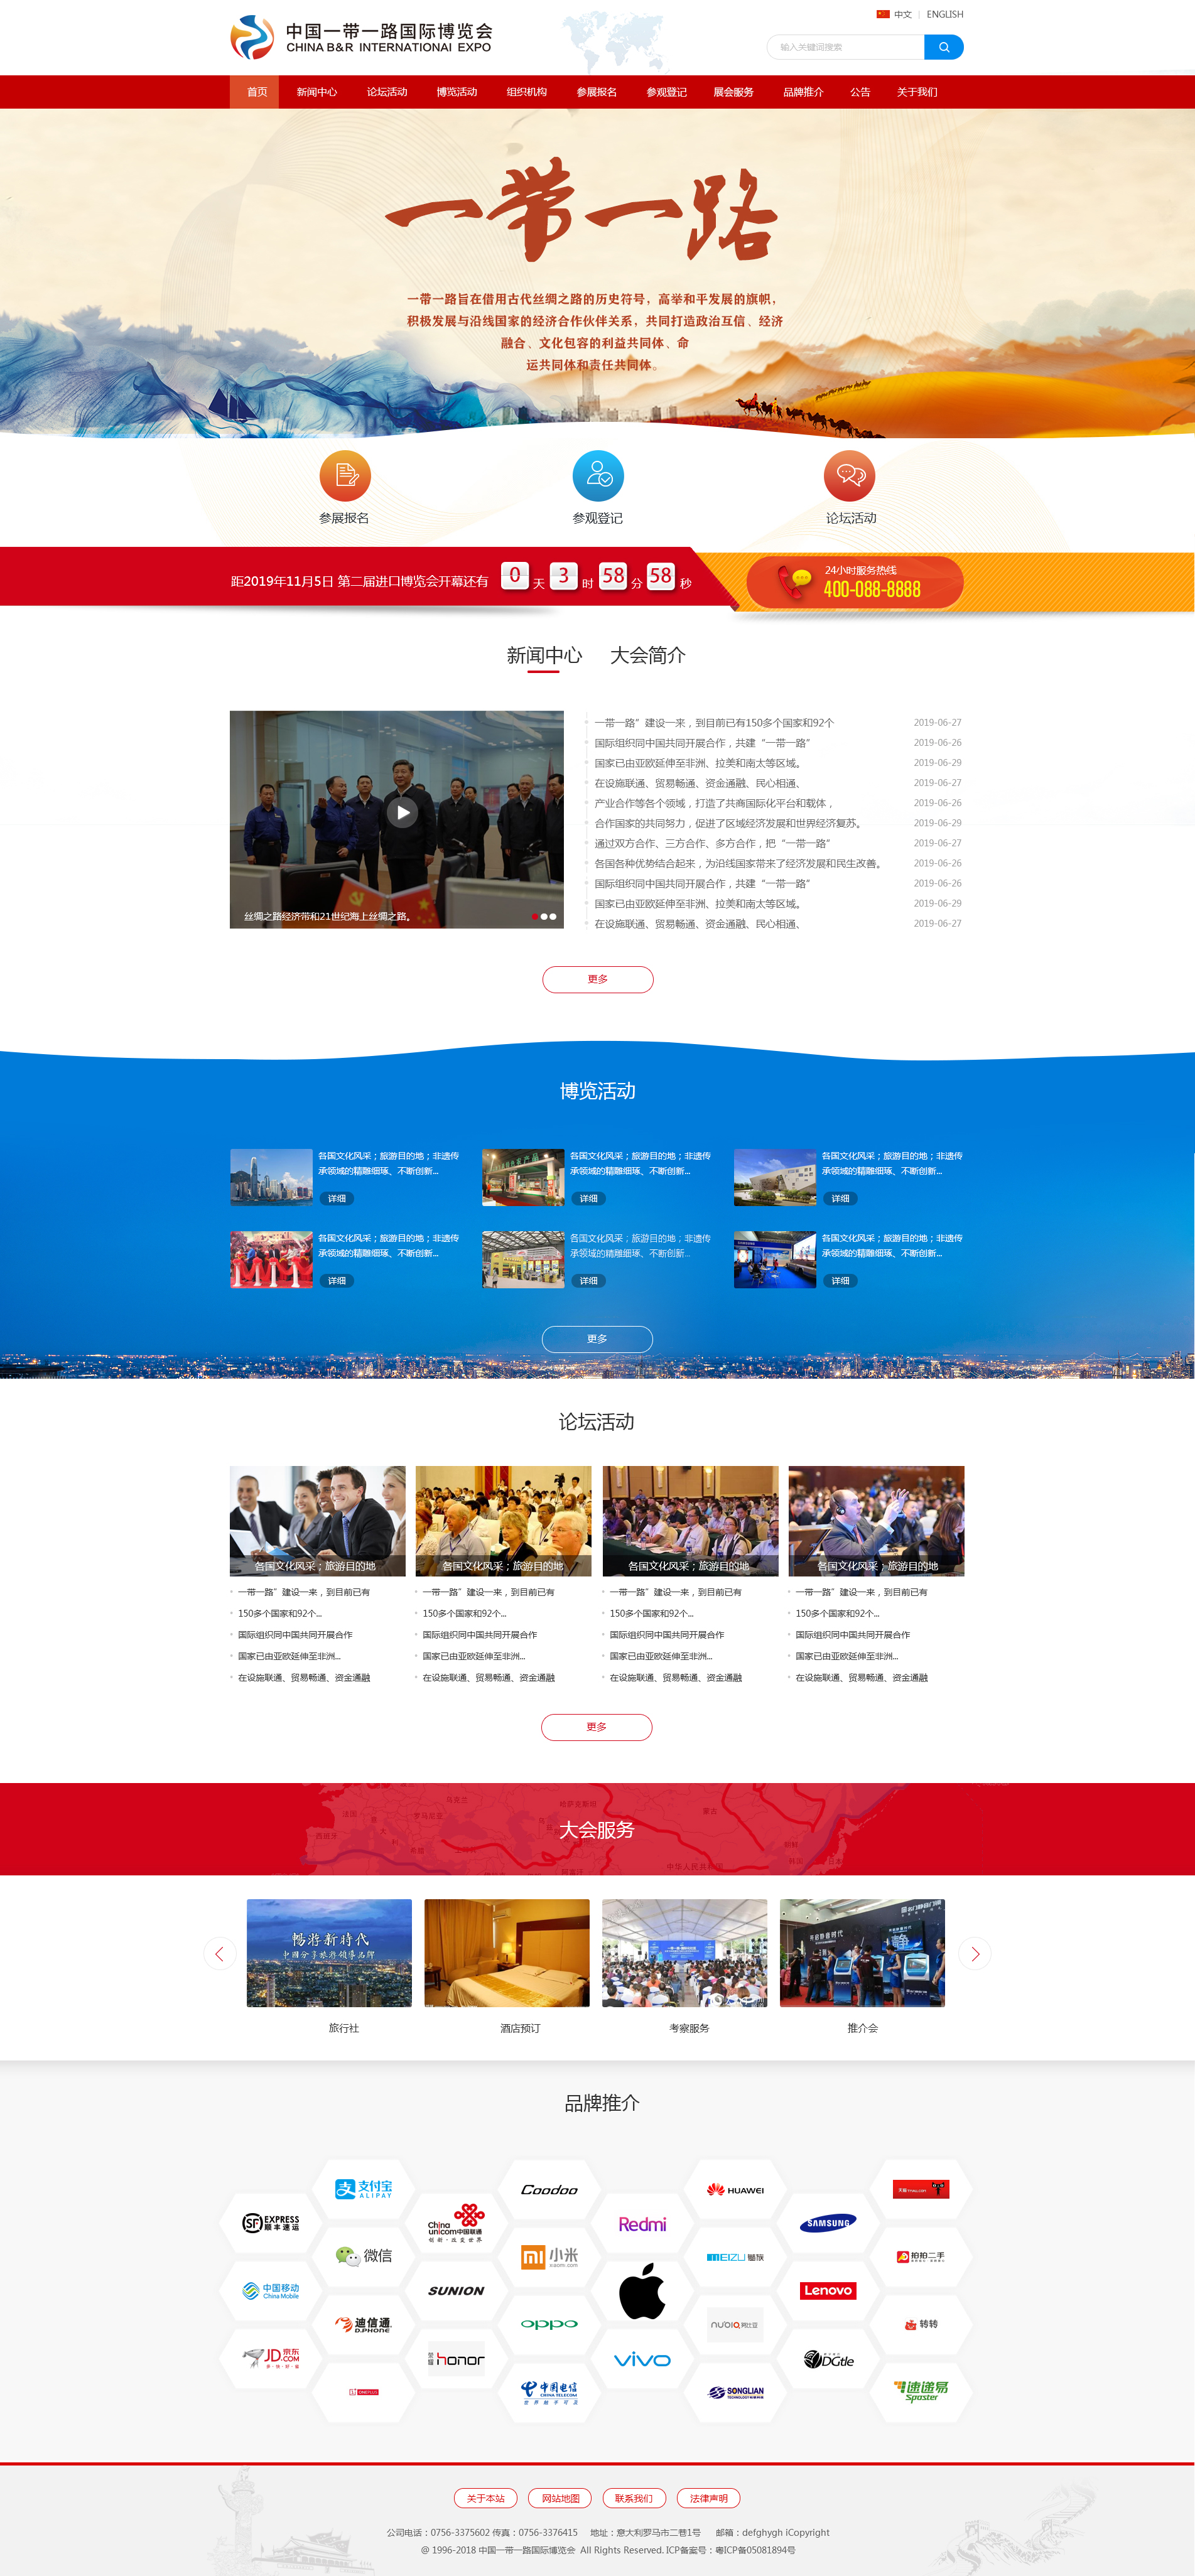 中国一带一路国际博览会网站UI设计-红色 国家 党支持 政策 新闻